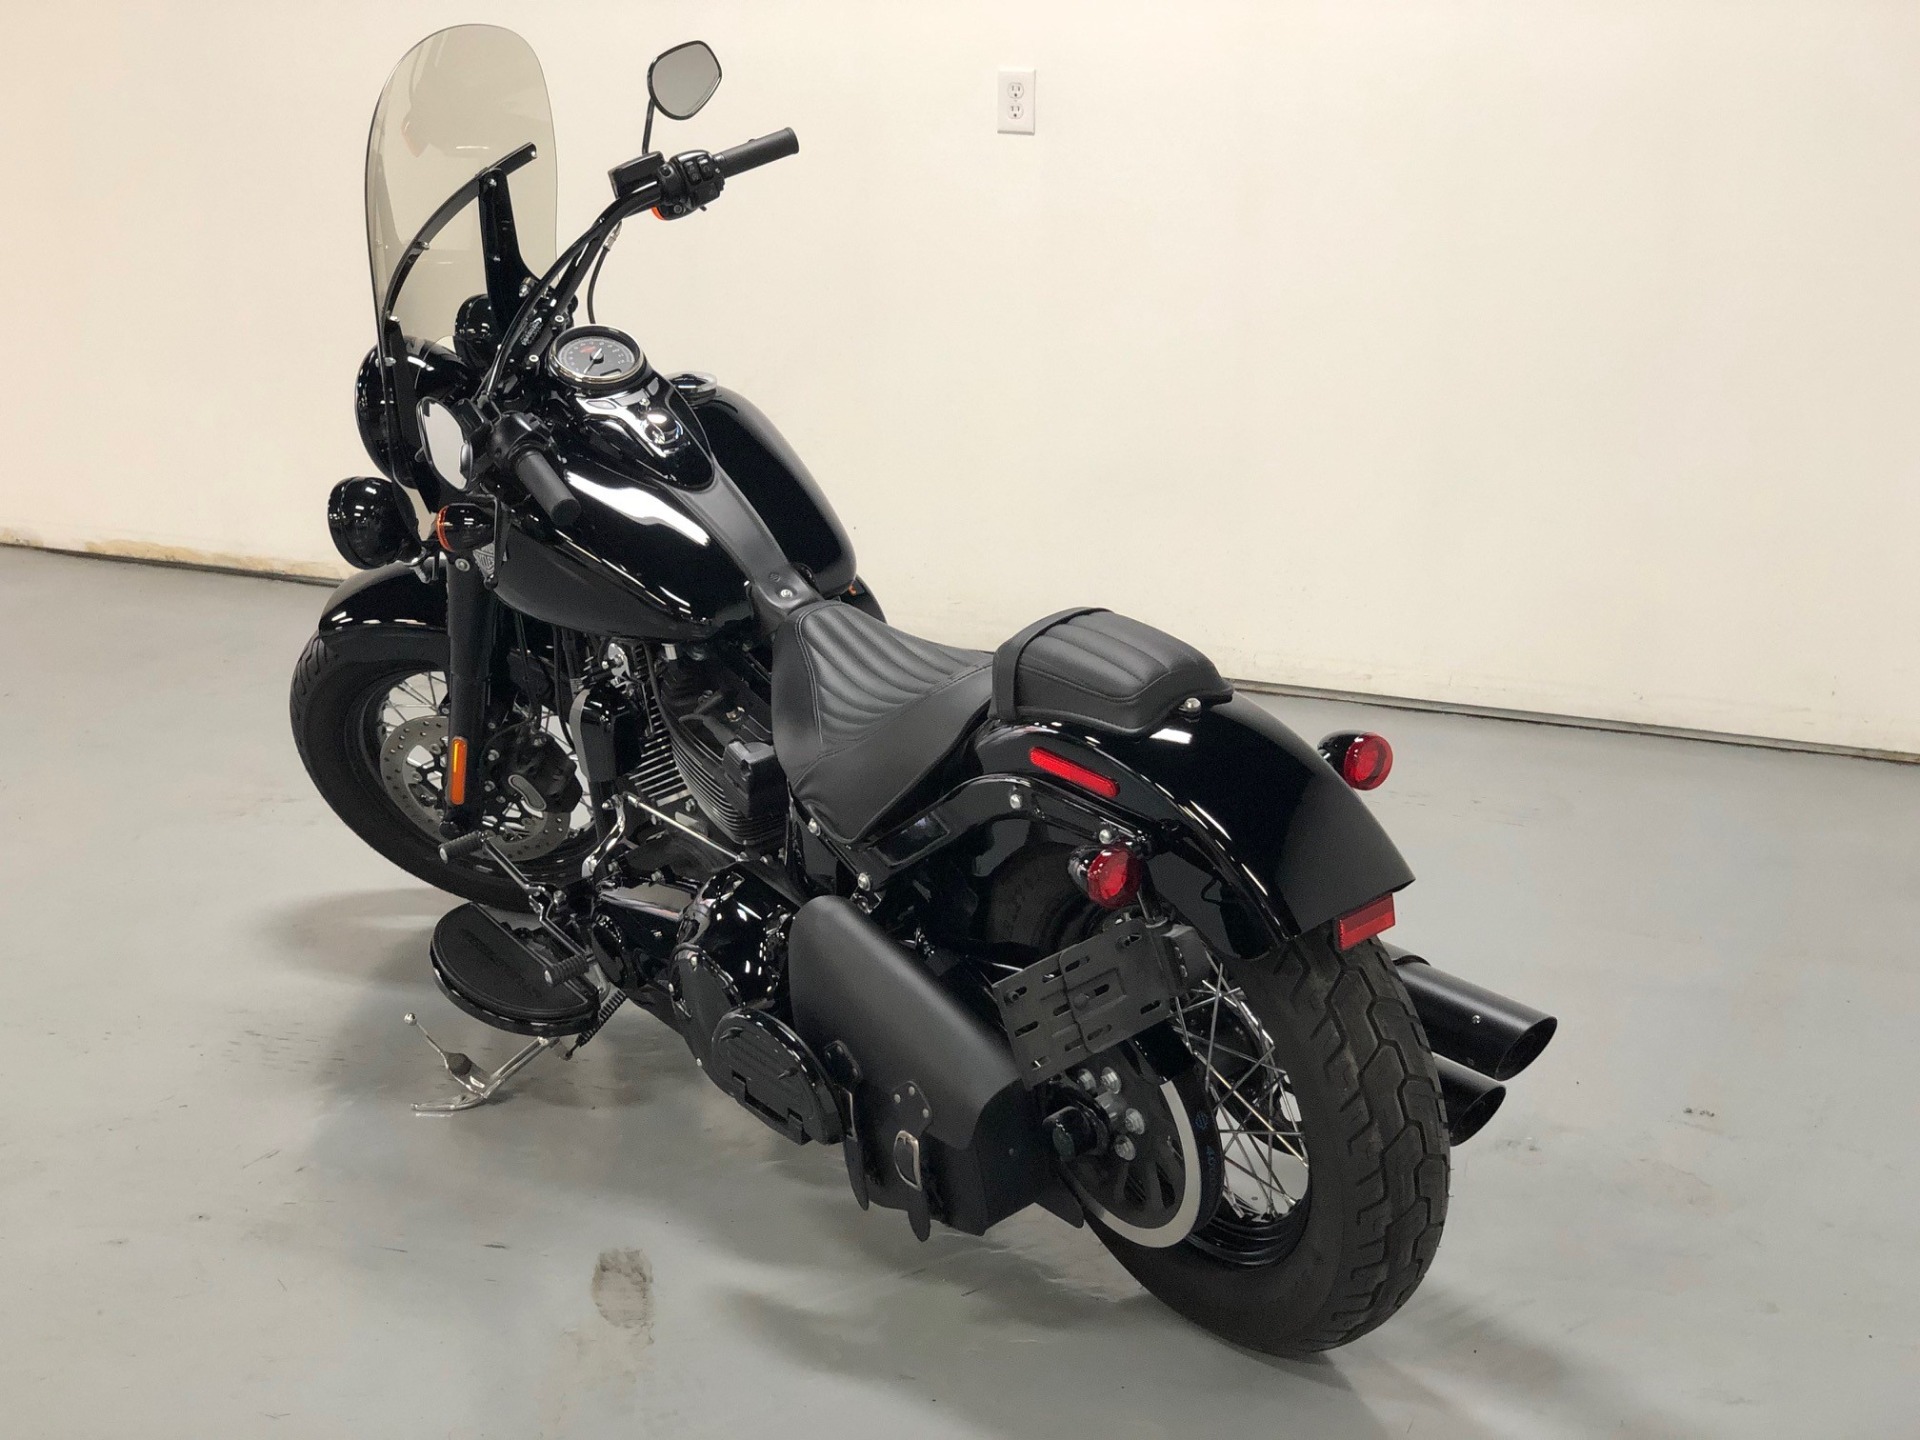 Used 2016 Black Harley Davidson Softail Slim S Flss For Sale Sold Prime Motorz Stock 2667